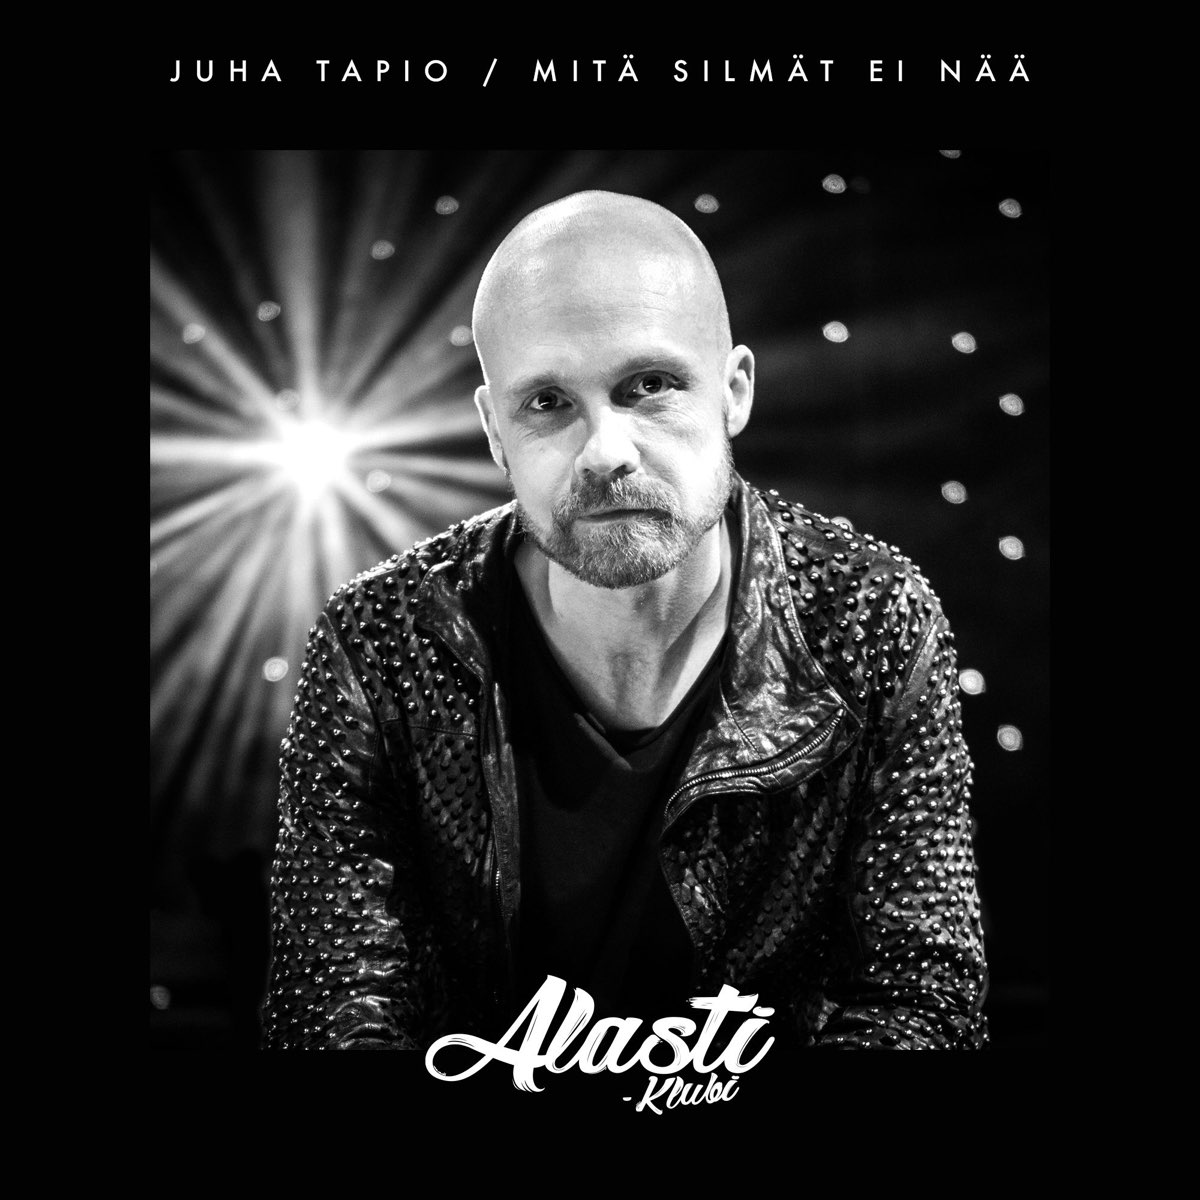 Mitä silmät ei nää (Alasti-klubi) - Single de Juha Tapio en Apple Music